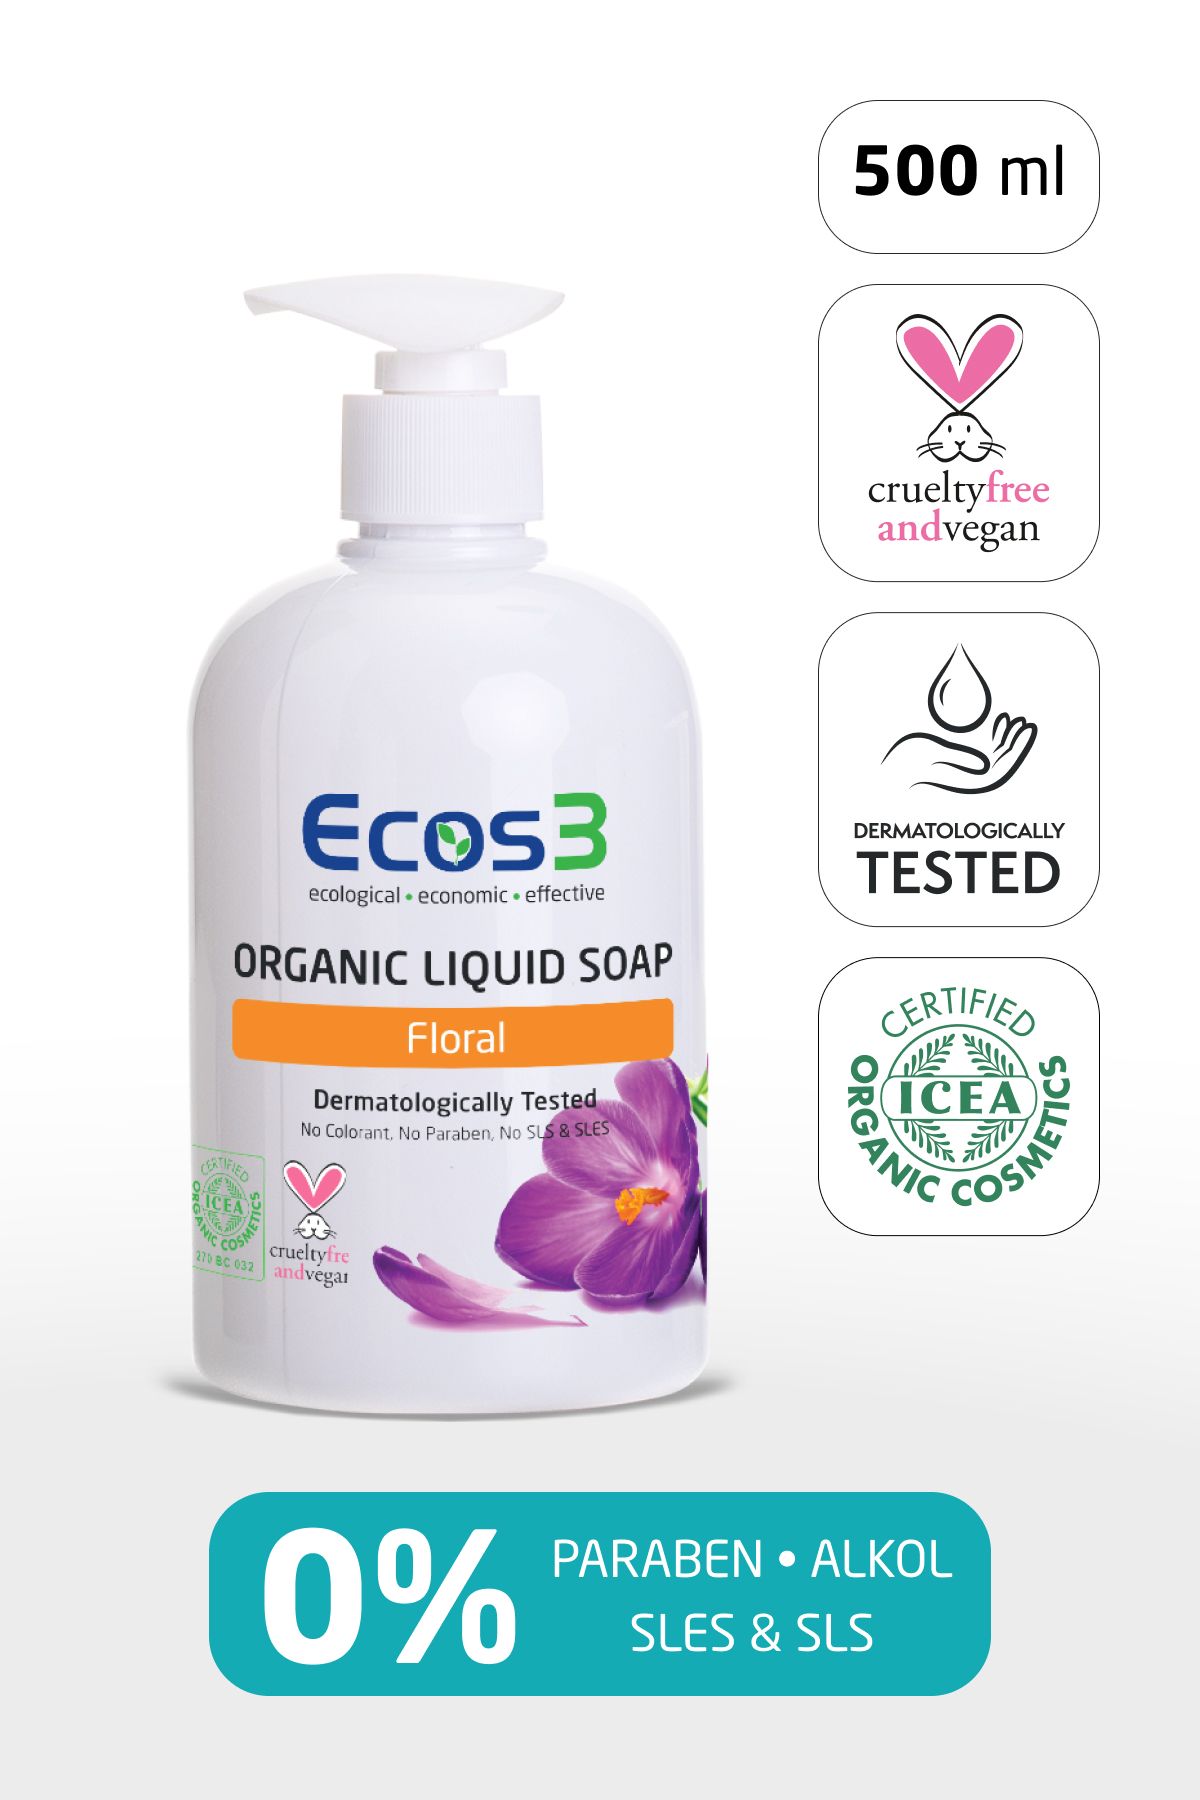 Ecos3 Sıvı Sabun, Organik & Vegan Sertifikalı, Ekolojik, Hipoalerjenik, Floral, 500ml